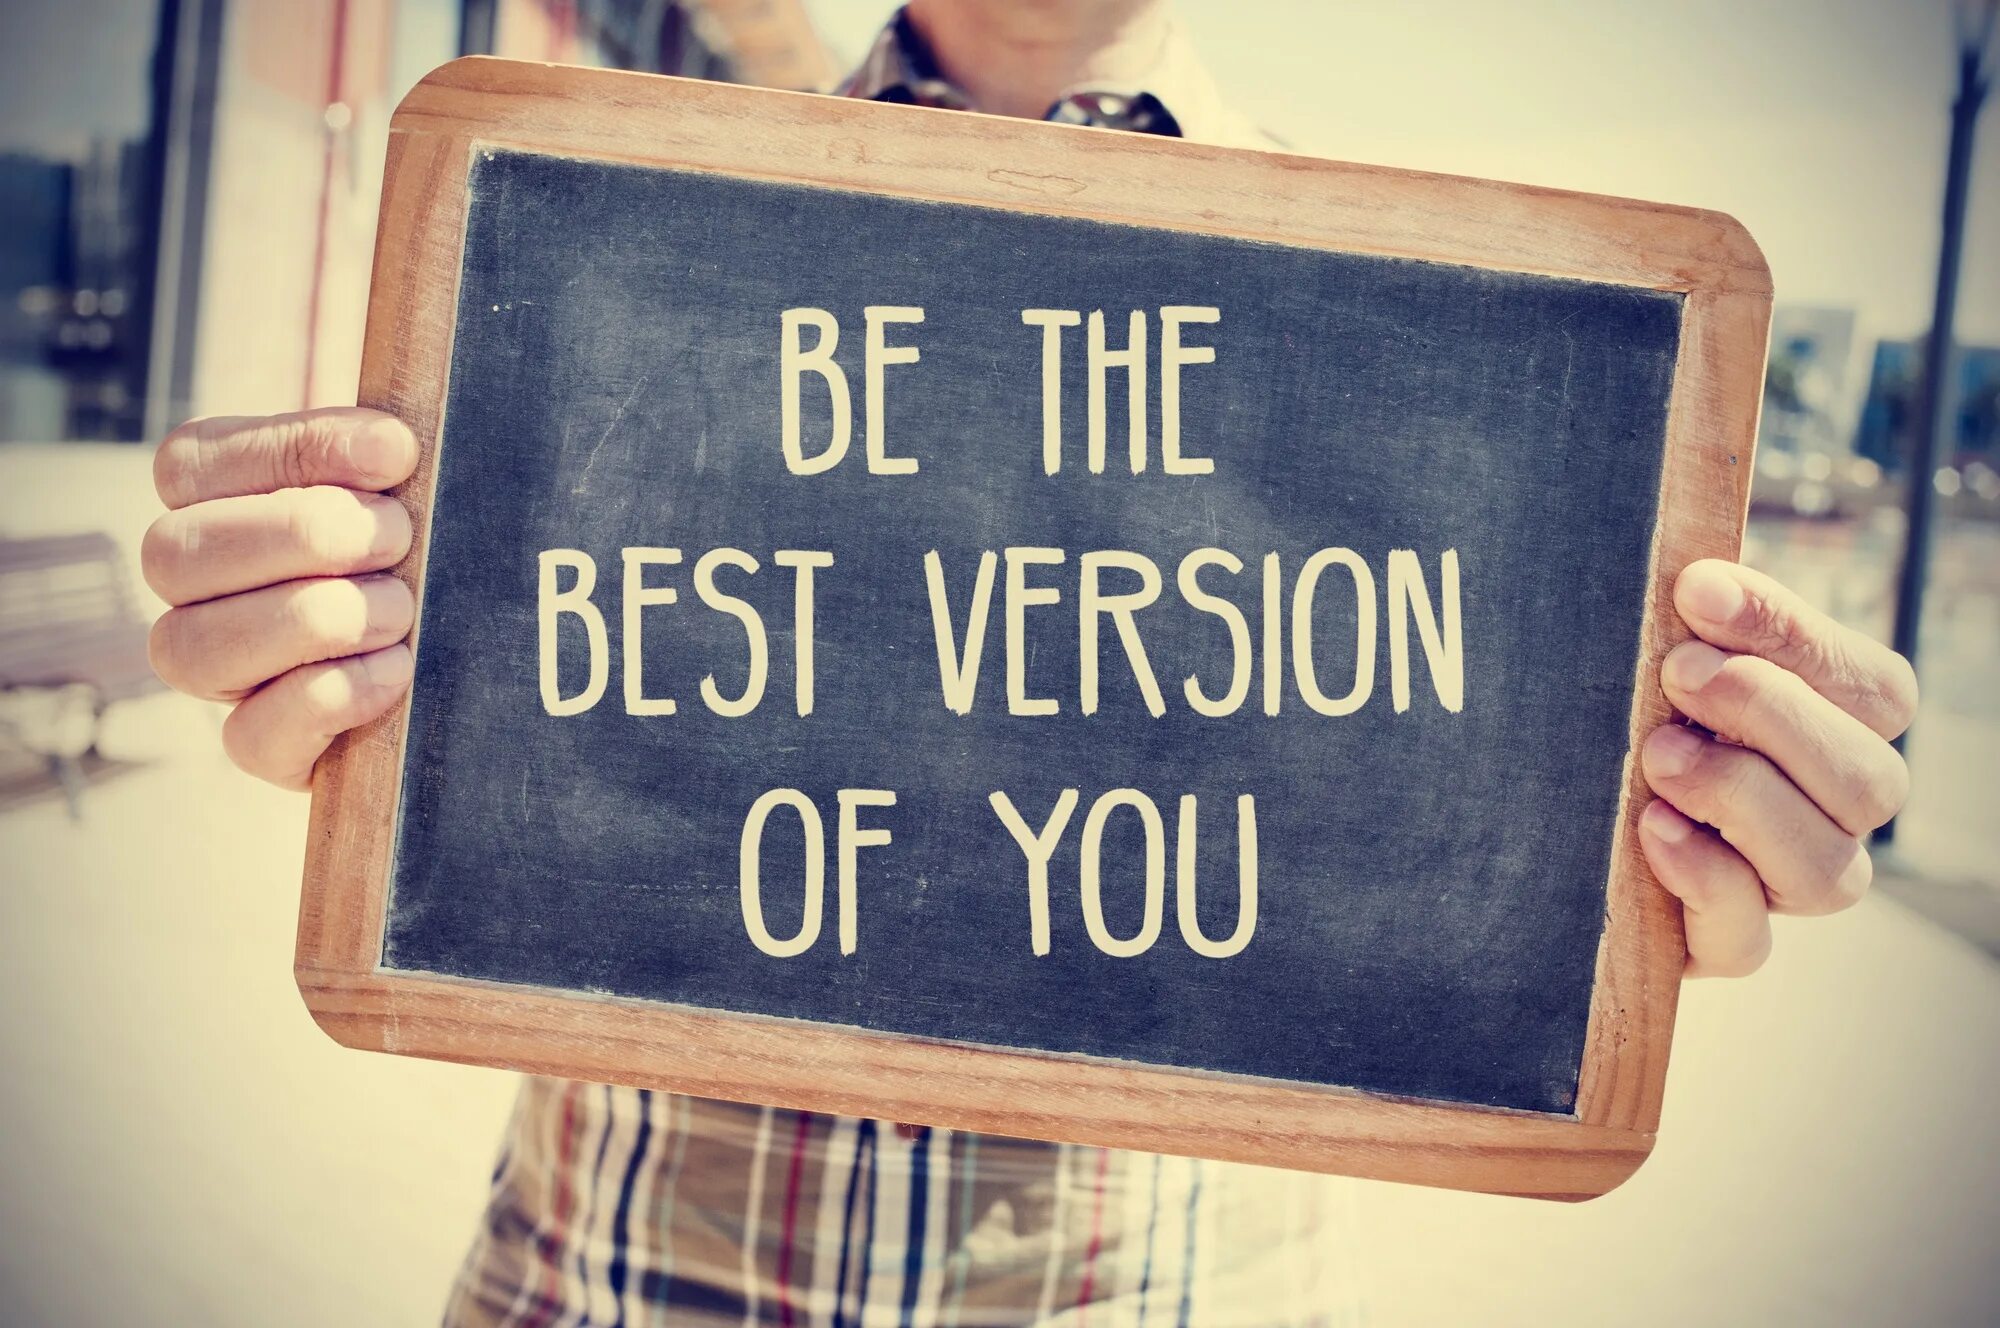 Ways to change life. Be you!. Be the best Version of yourself обои. Мотивационные картинки. Стань лучшей версией себя на английском.